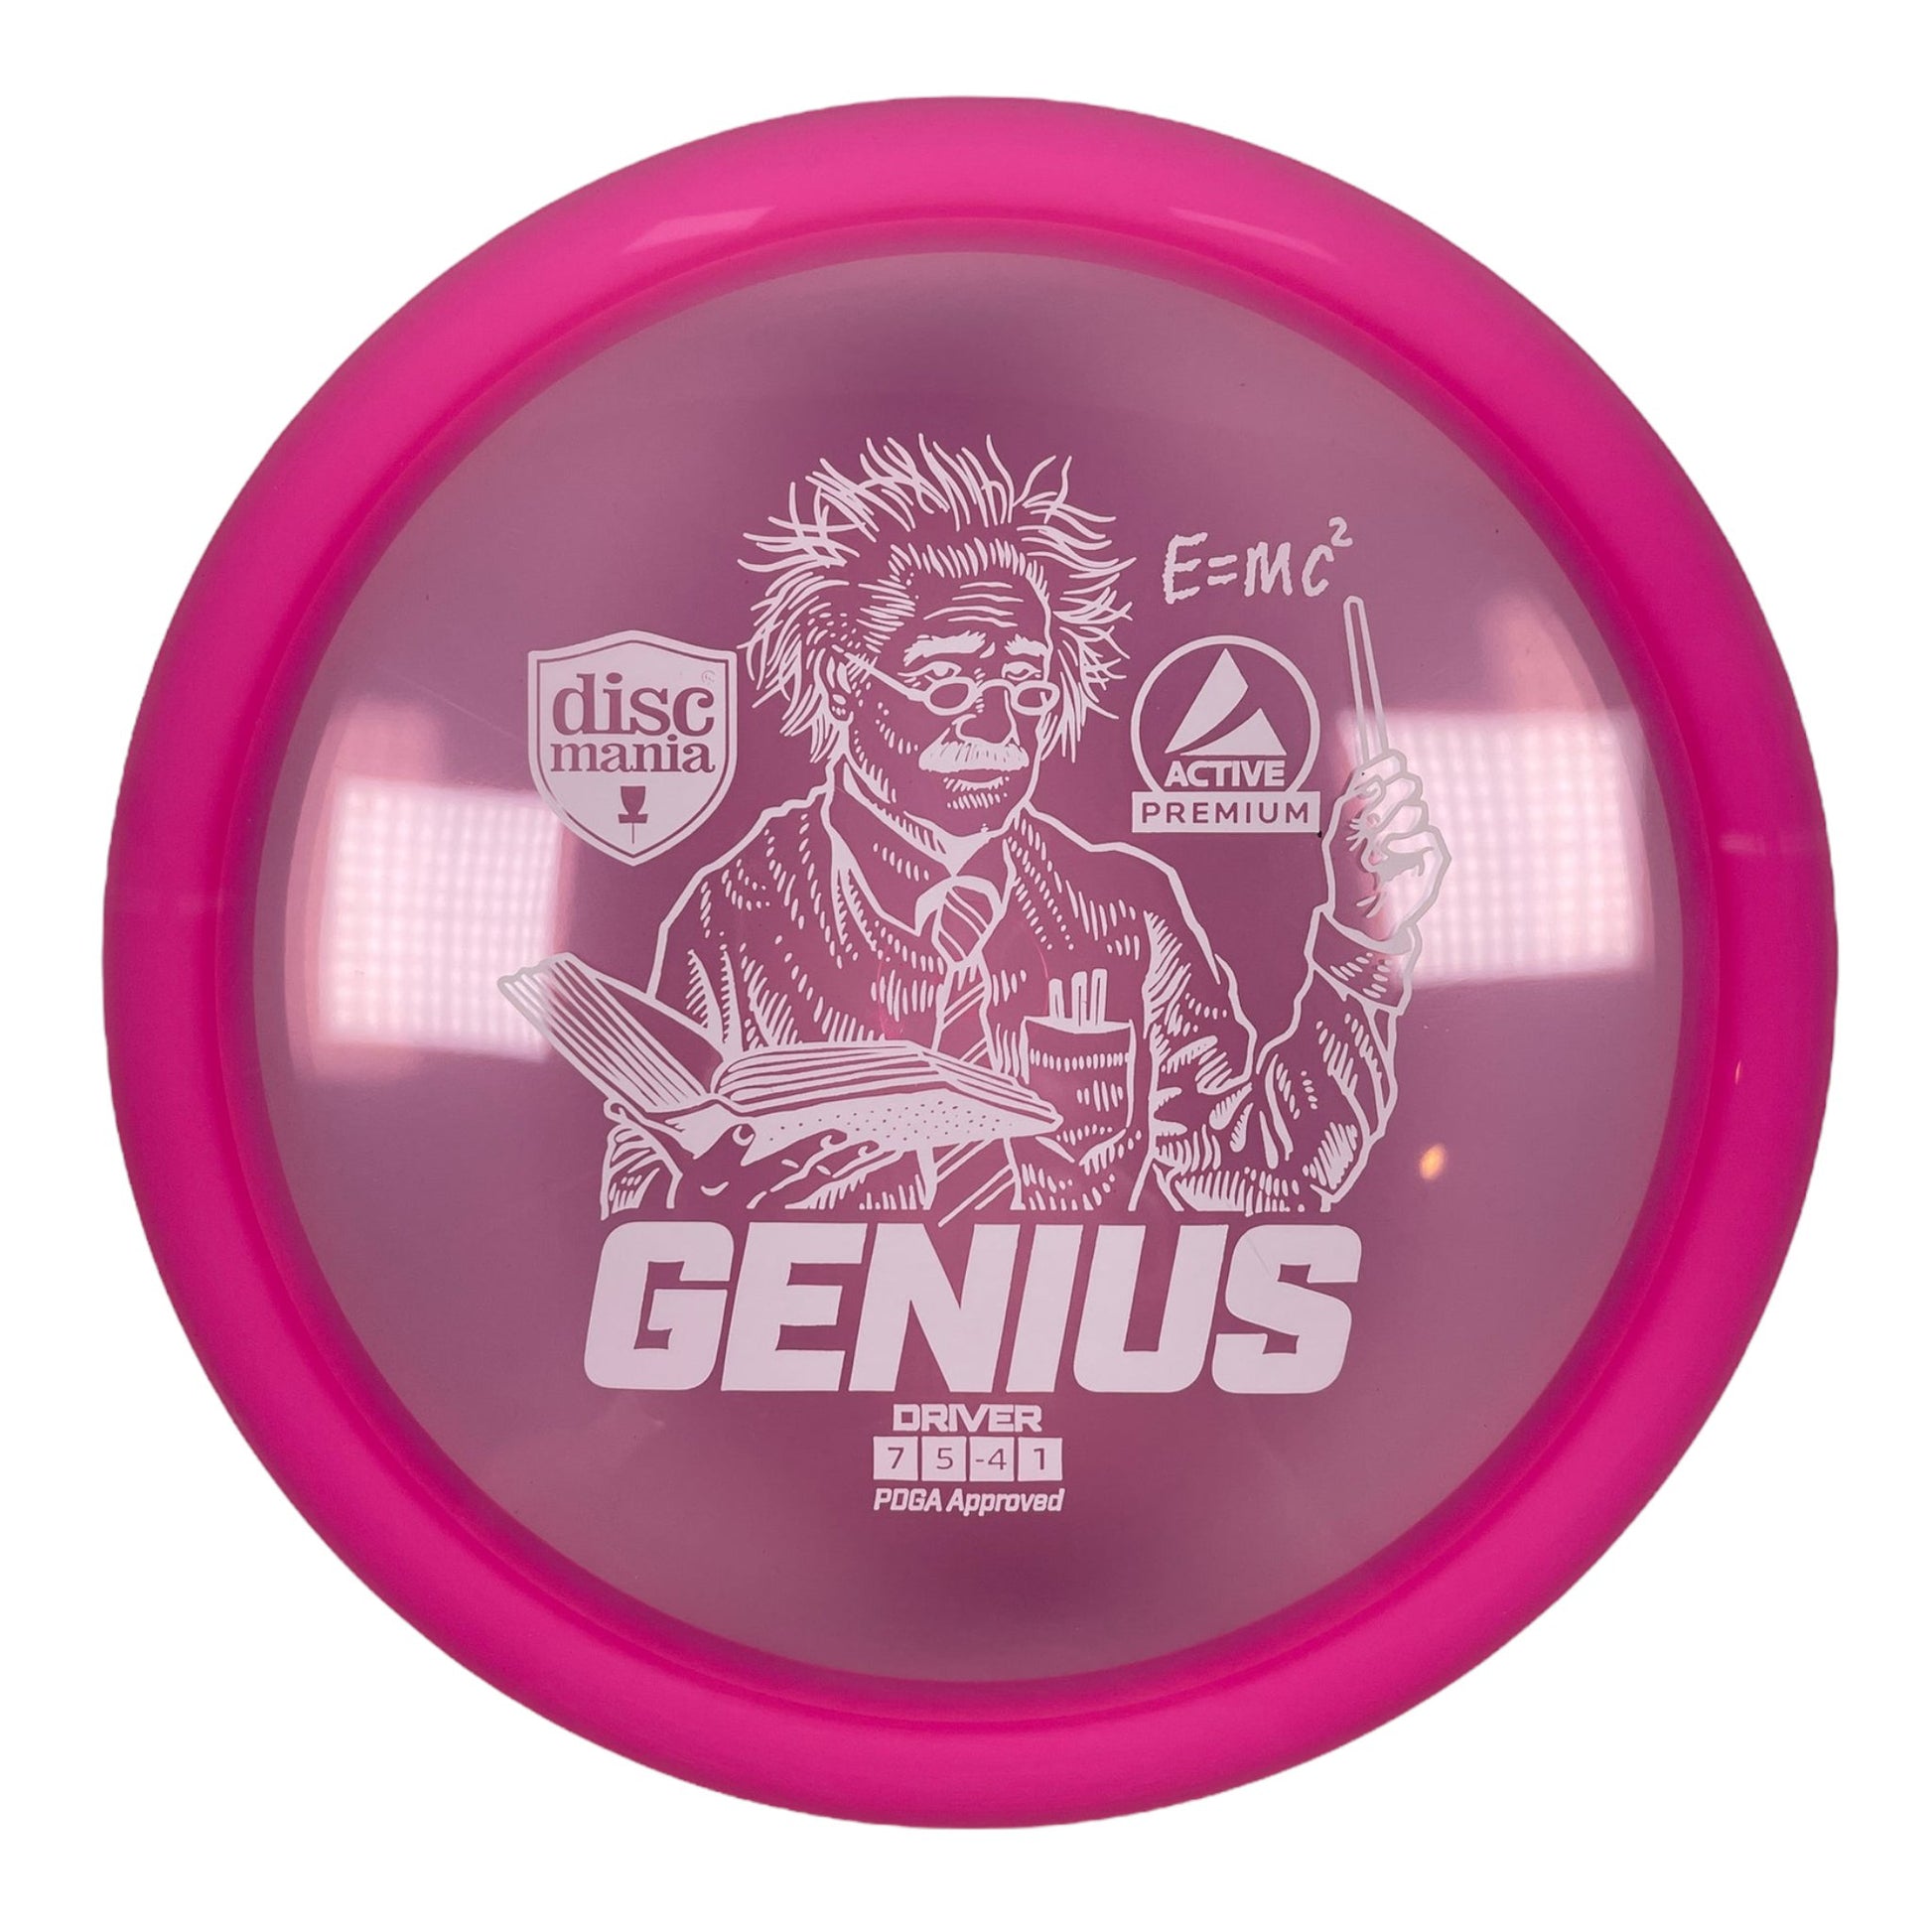 Discmania Genius | Active Premium | Pink/White 173g Disc Golf